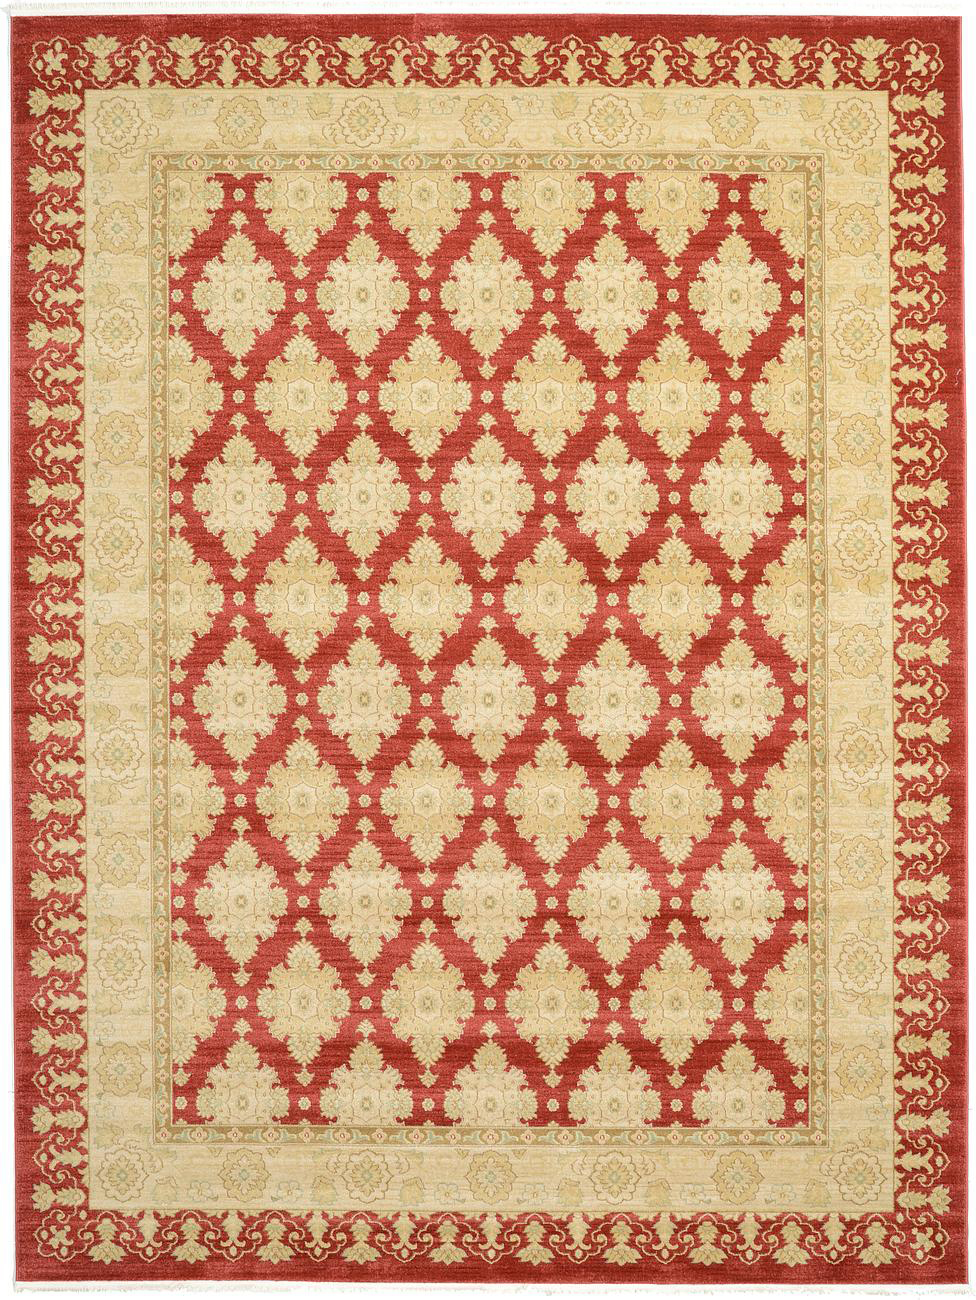 316欧式古典经典地毯